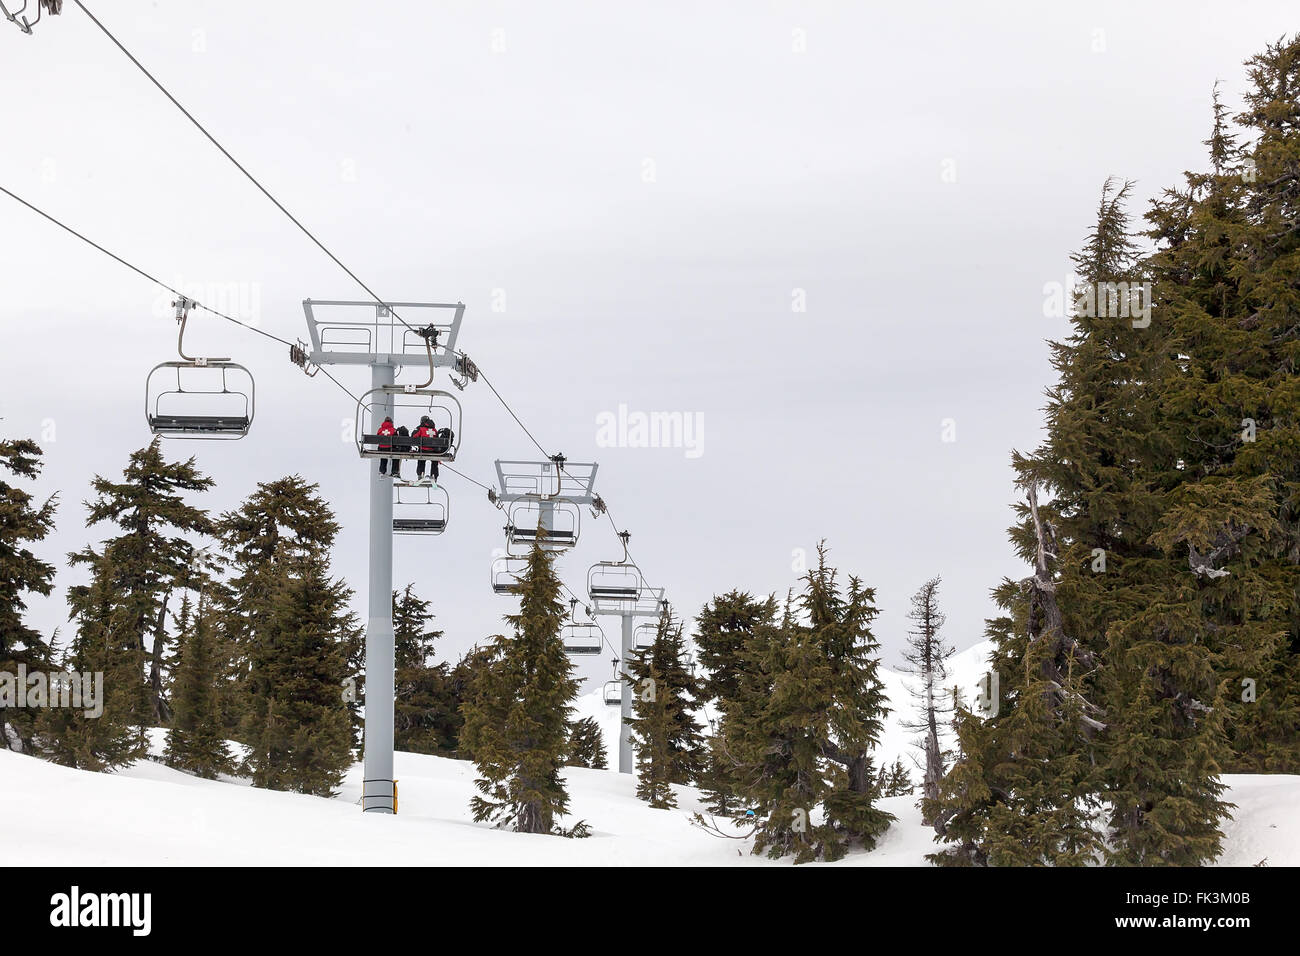 US Forest Service du personnel de l'équipage de sauvetage ski Équitation ascenseur jusqu'au flanc du Mont Hood dans l'Oregon Banque D'Images